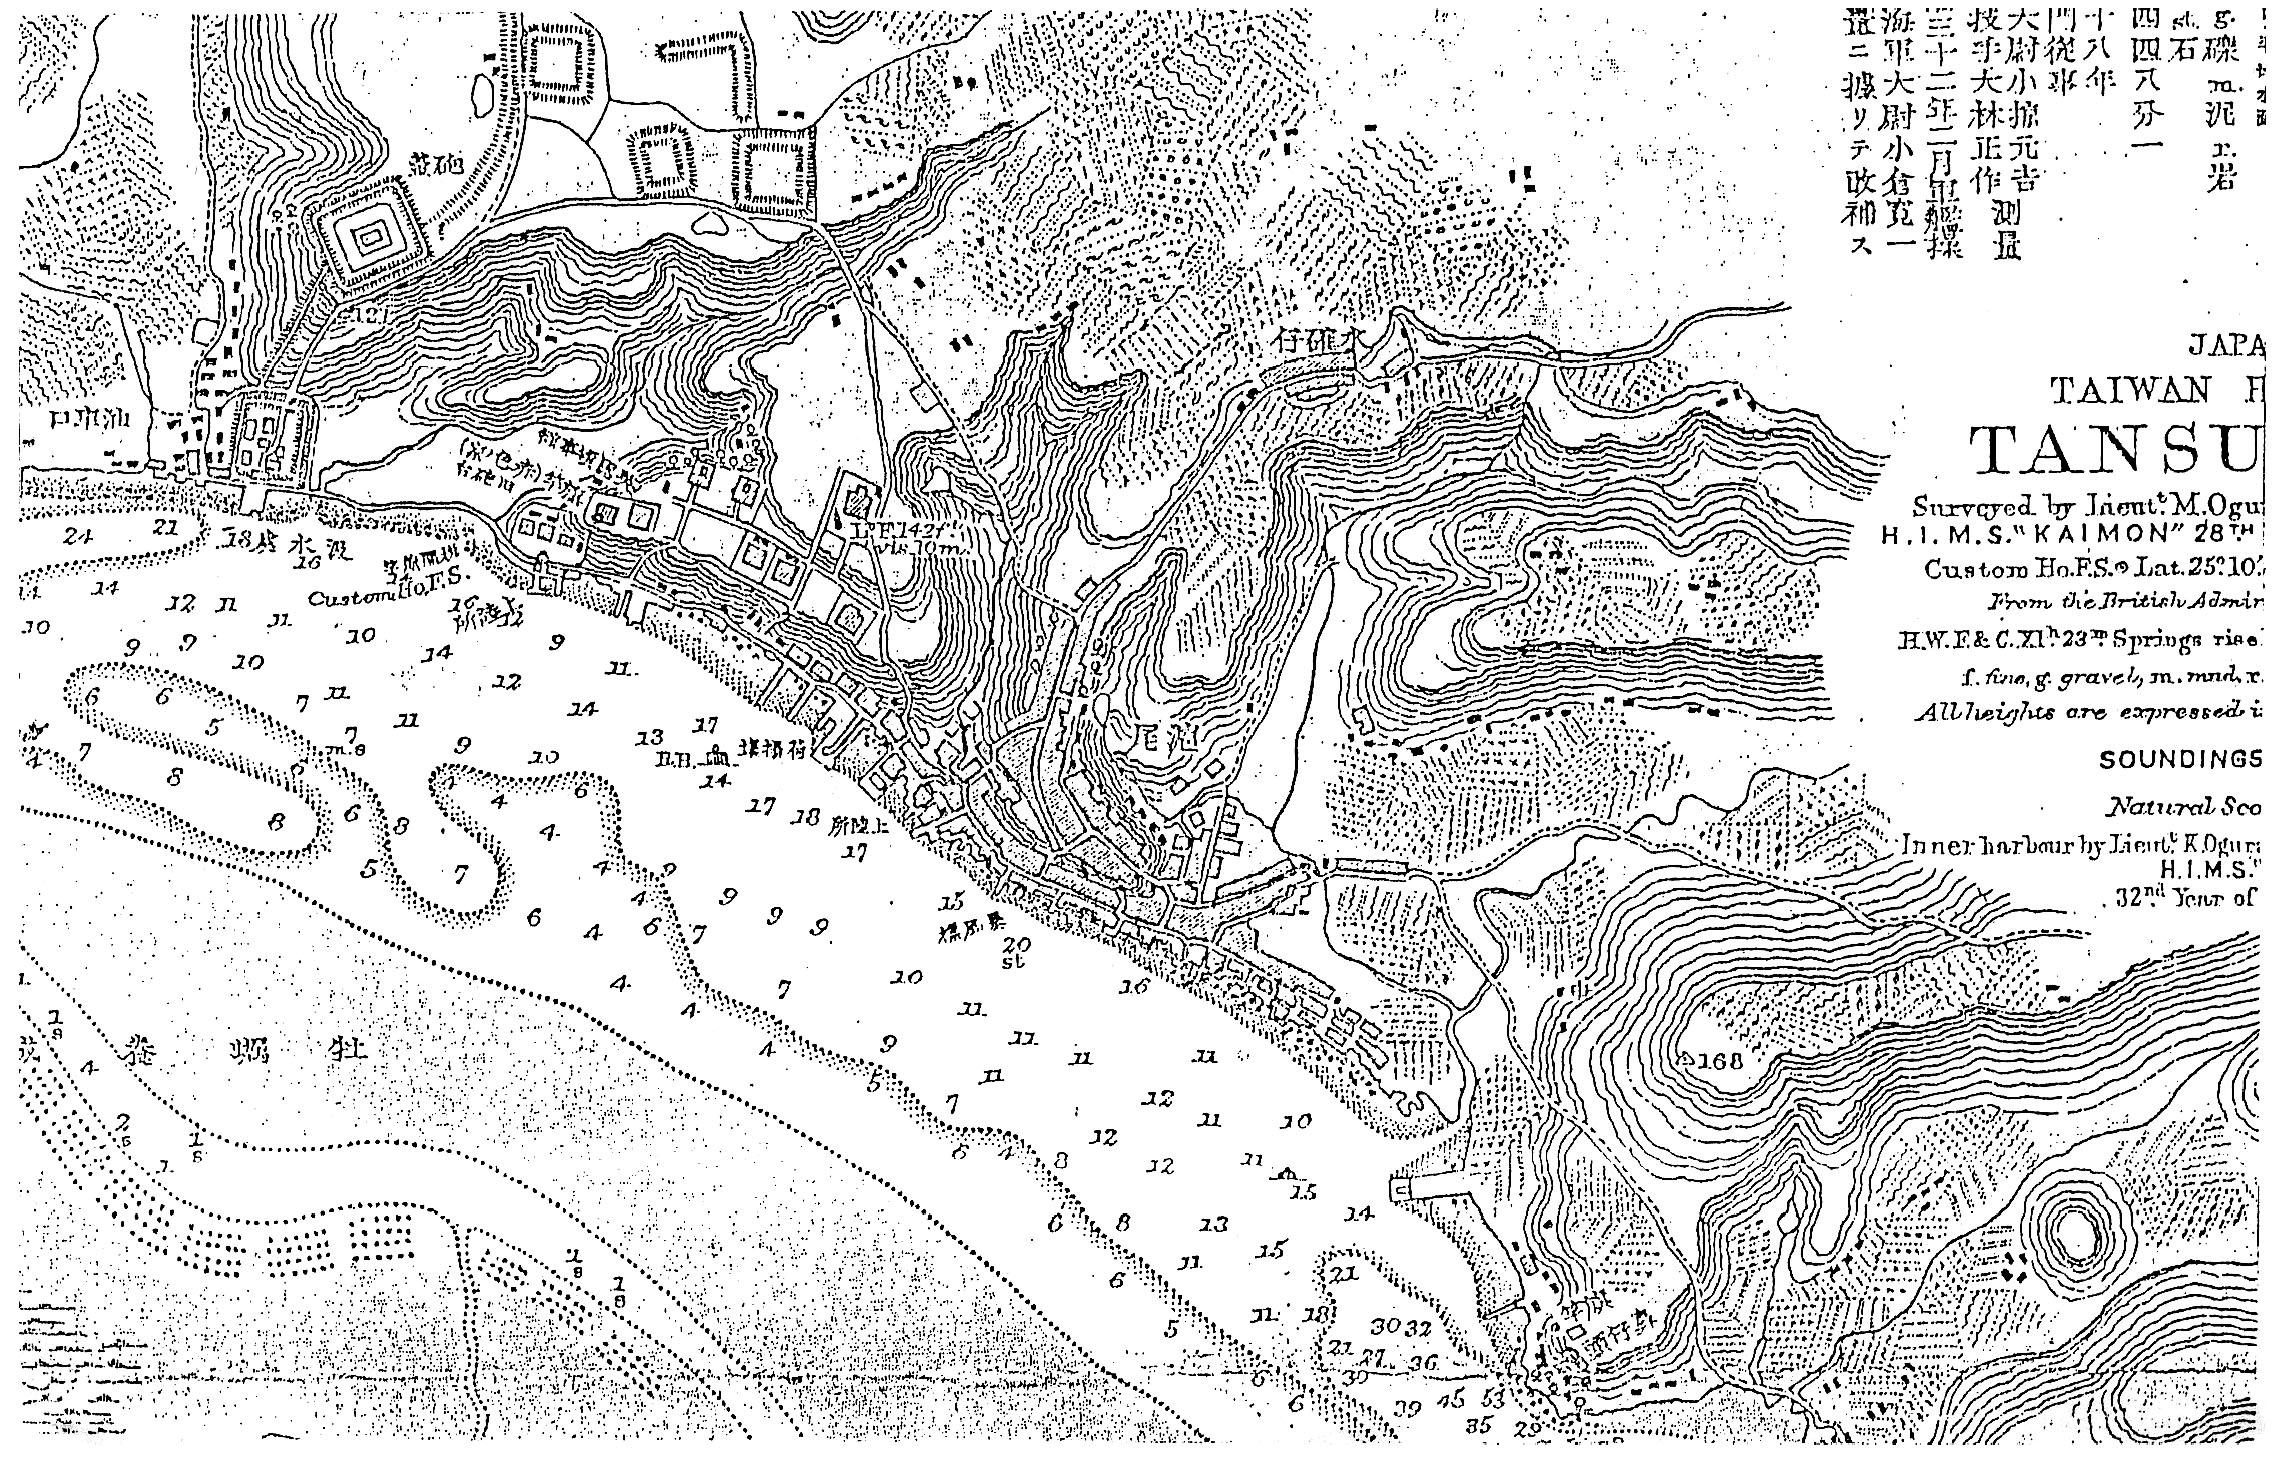 淡水基本資料圖片檔:1895年日軍所繪之淡水港水路圖